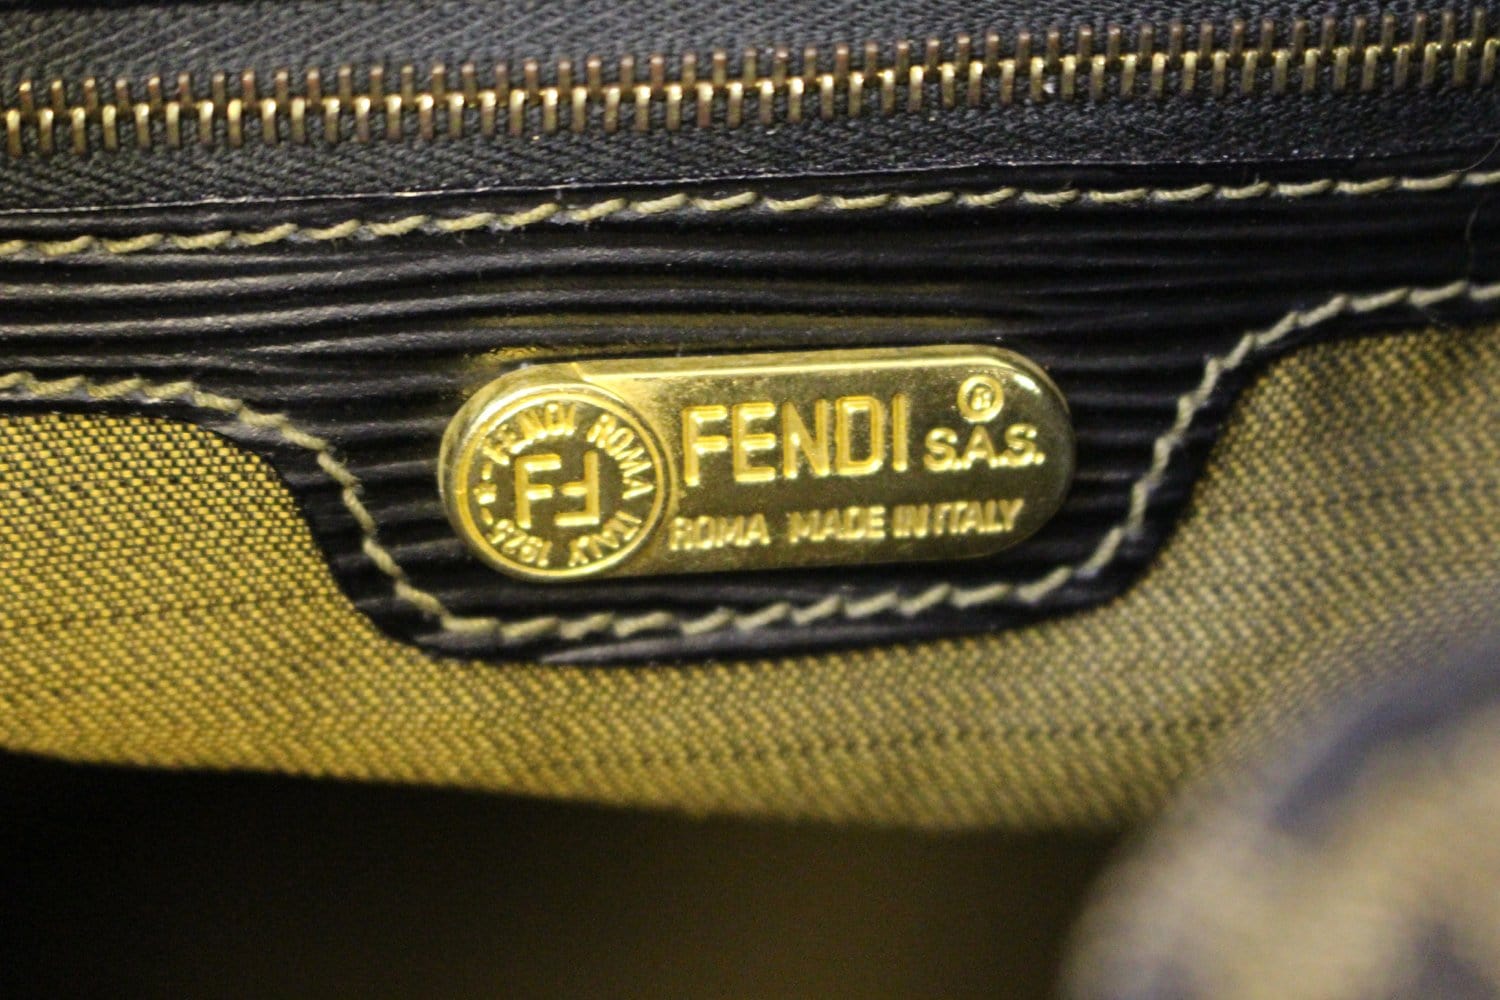 Fendi Zucca Backpack - Fendi Backpack Monogram